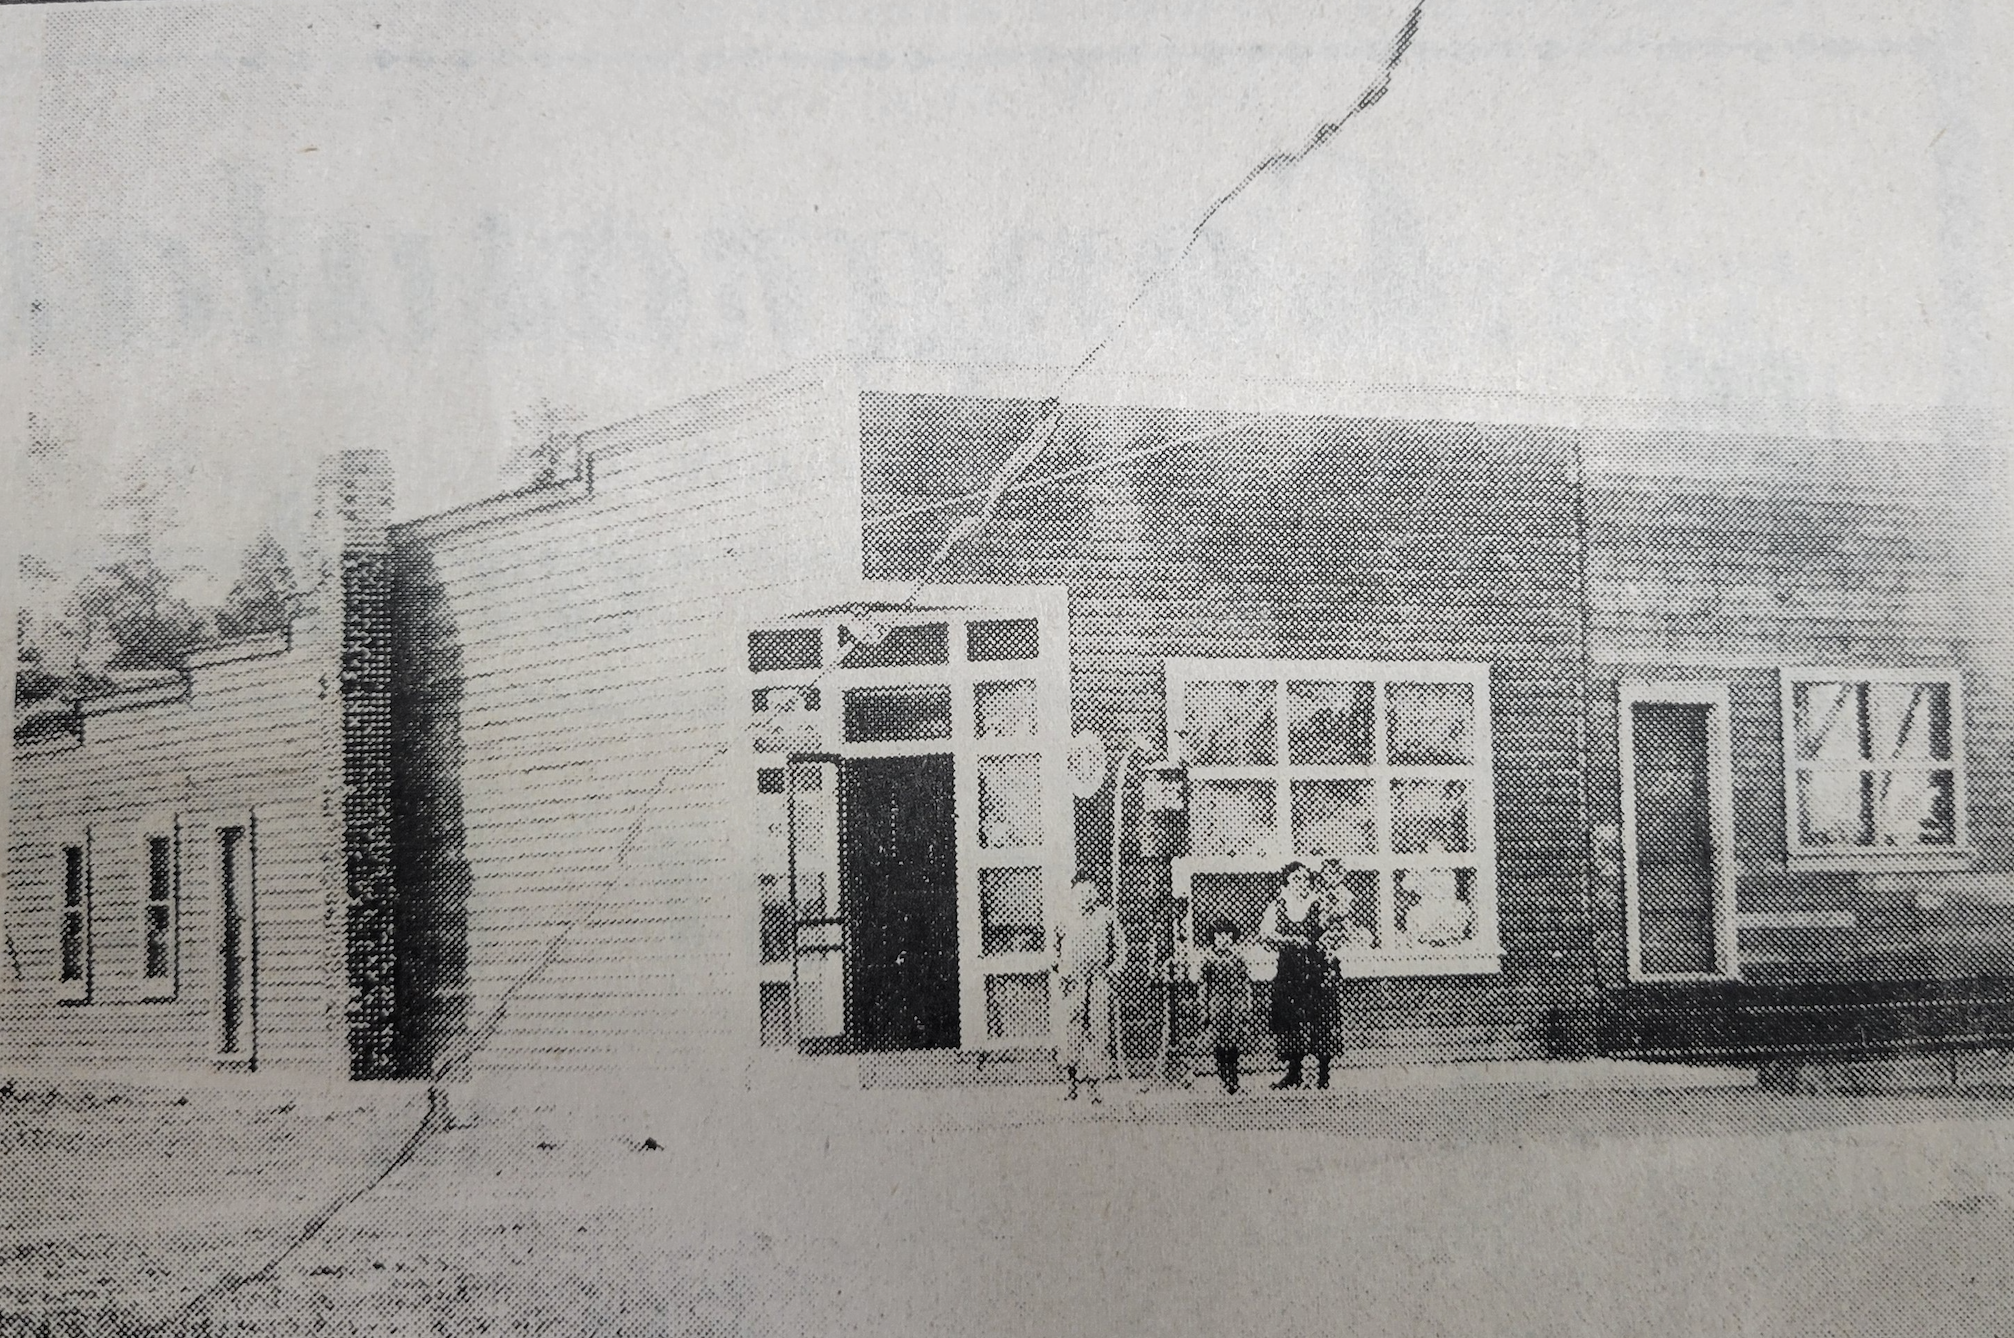 1923 Picchioni's storefront